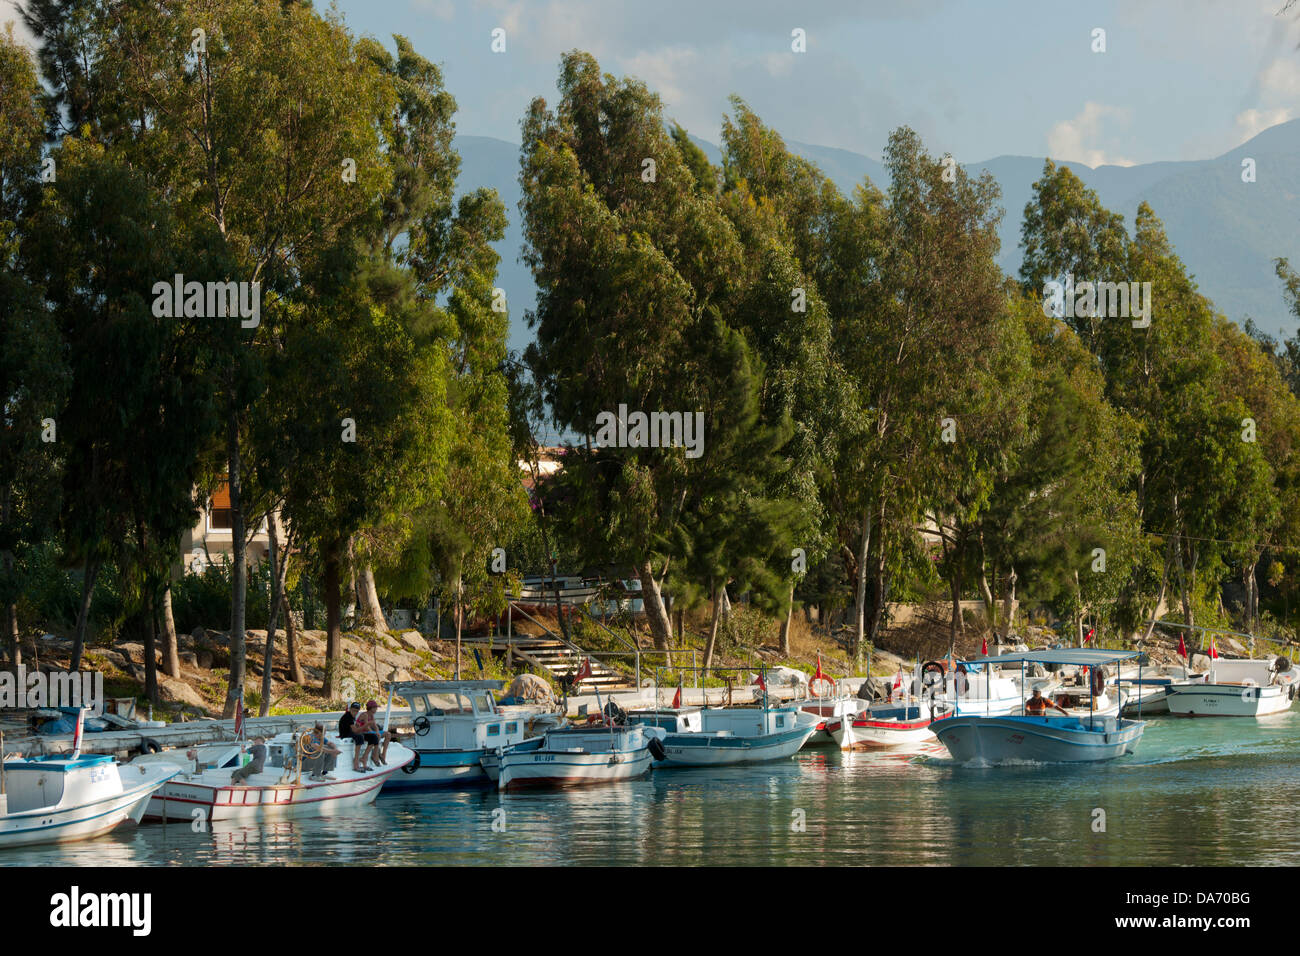 Türkei, Provinz Hatay (Antakya), Arsuz (Ulucinar), Boote am Fluss Arsuz Banque D'Images